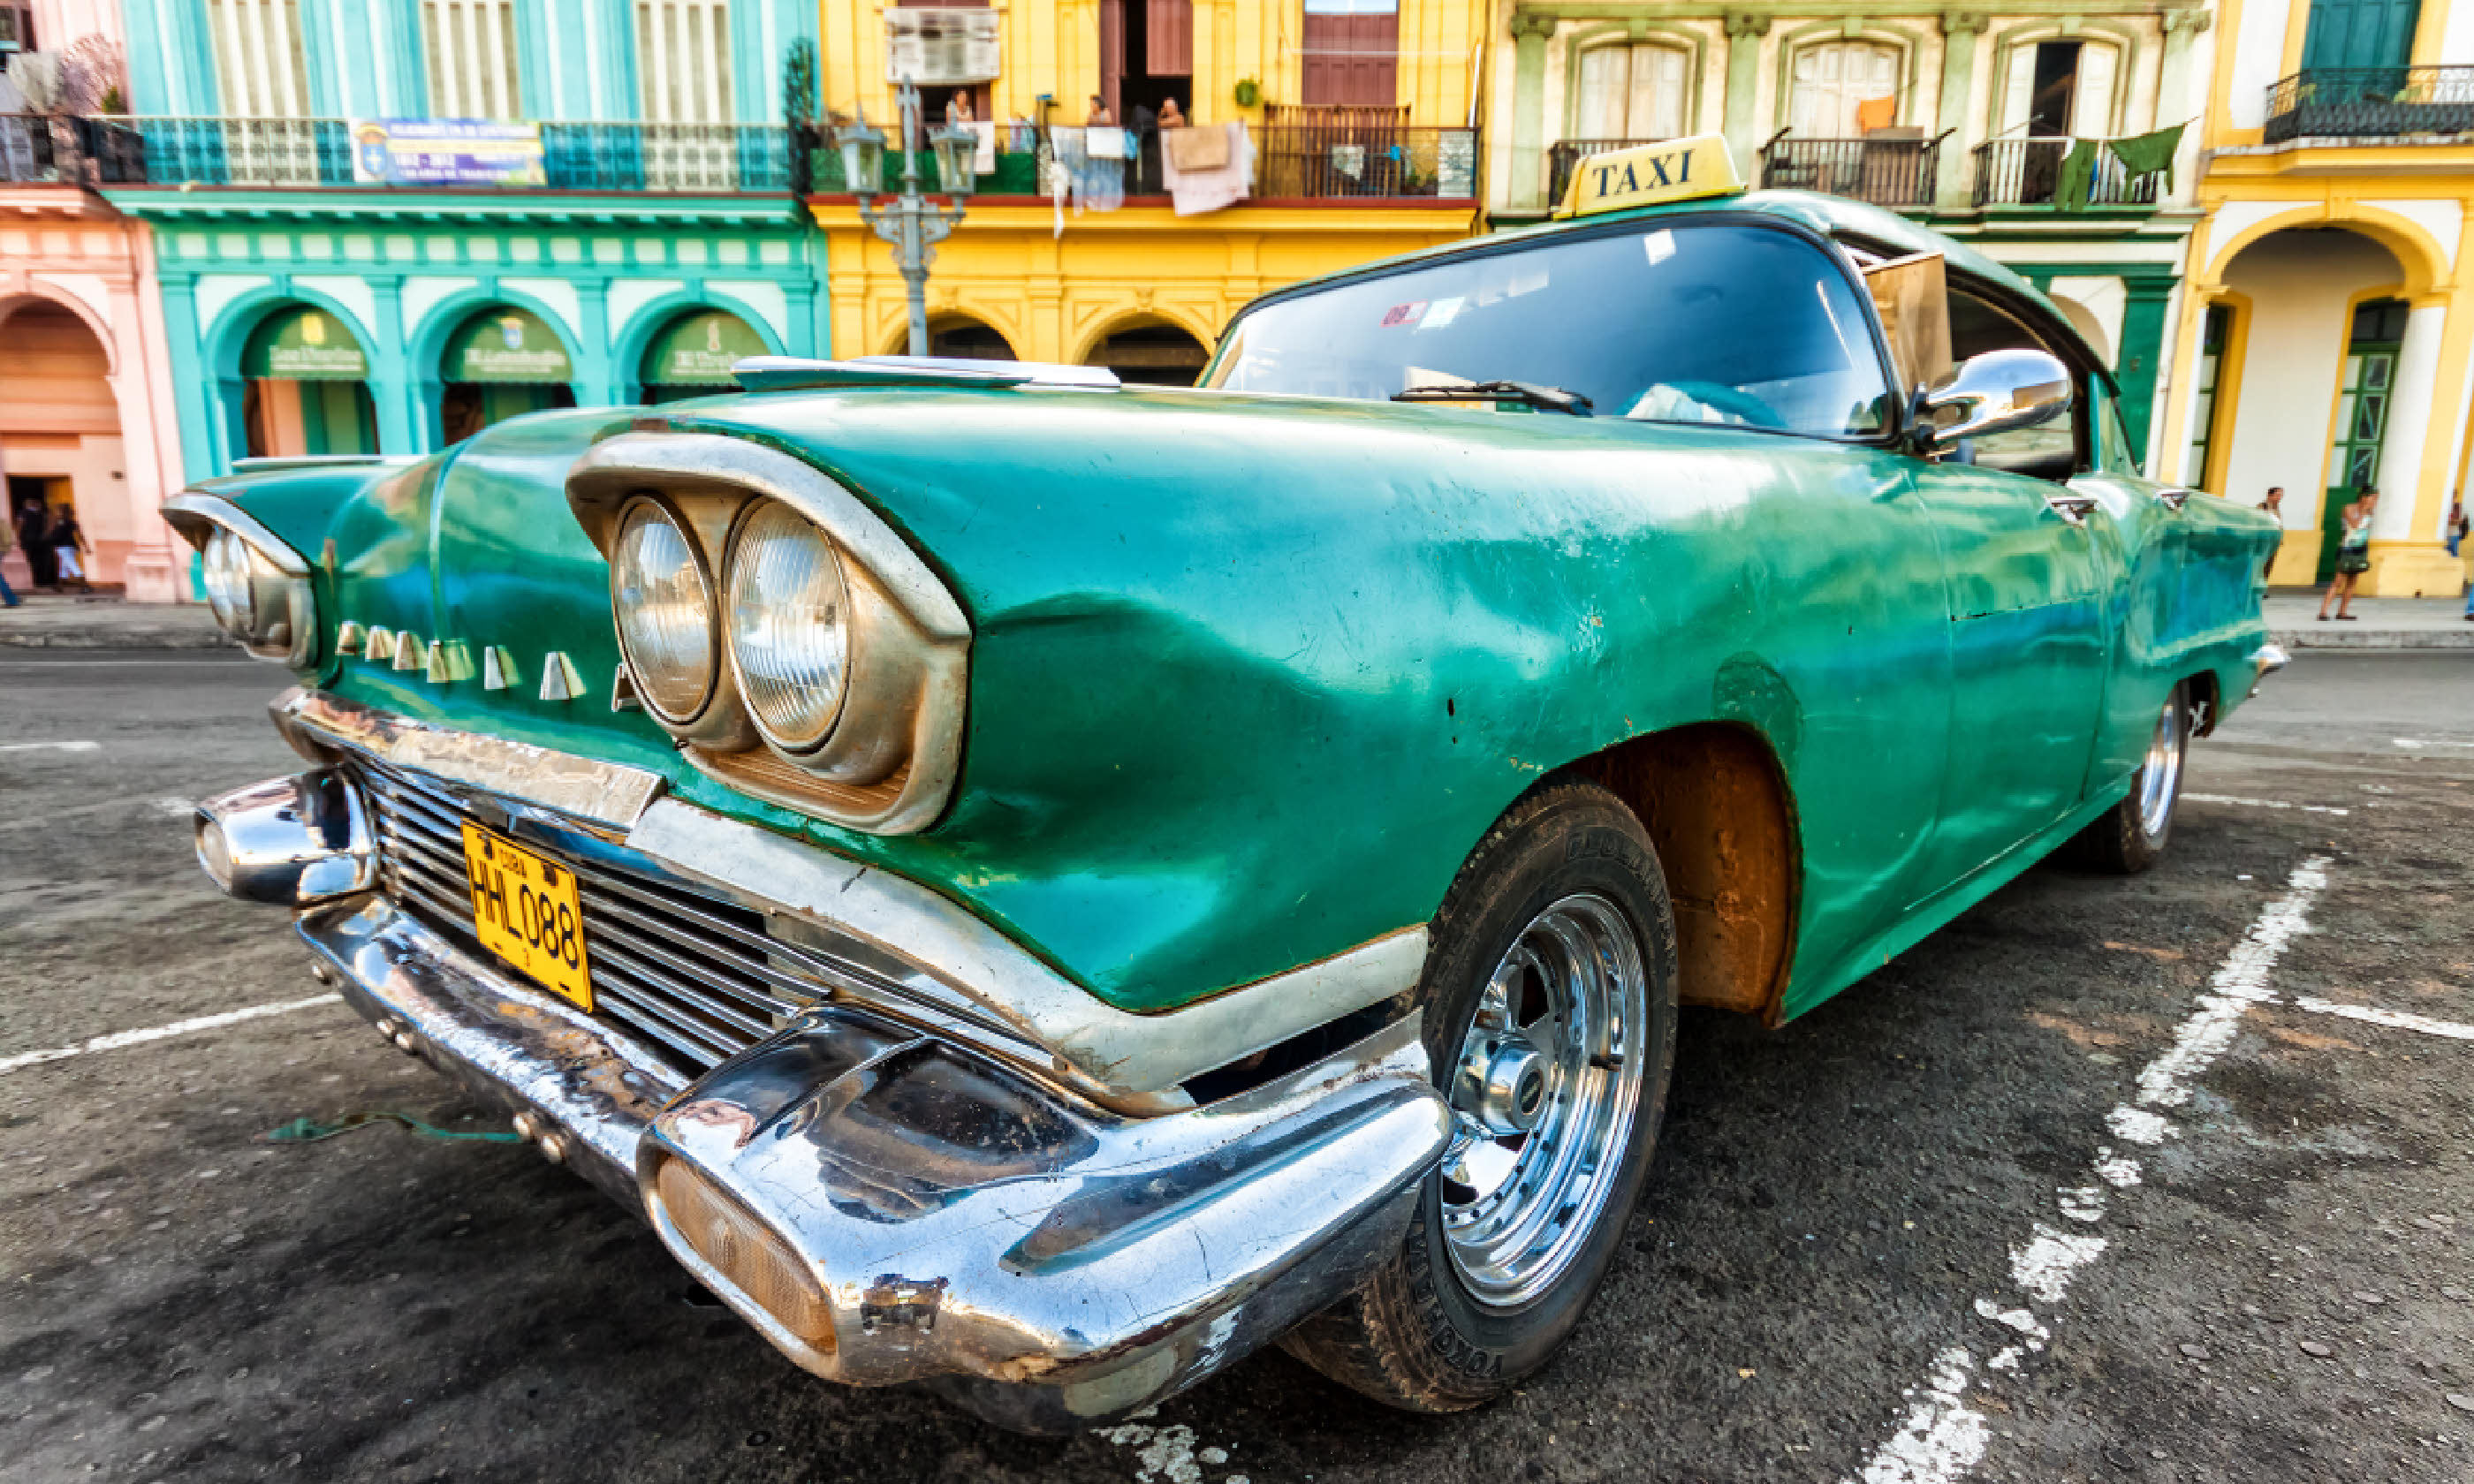 Vintage Cadillac in Havana (Shutterstock: see credit below)